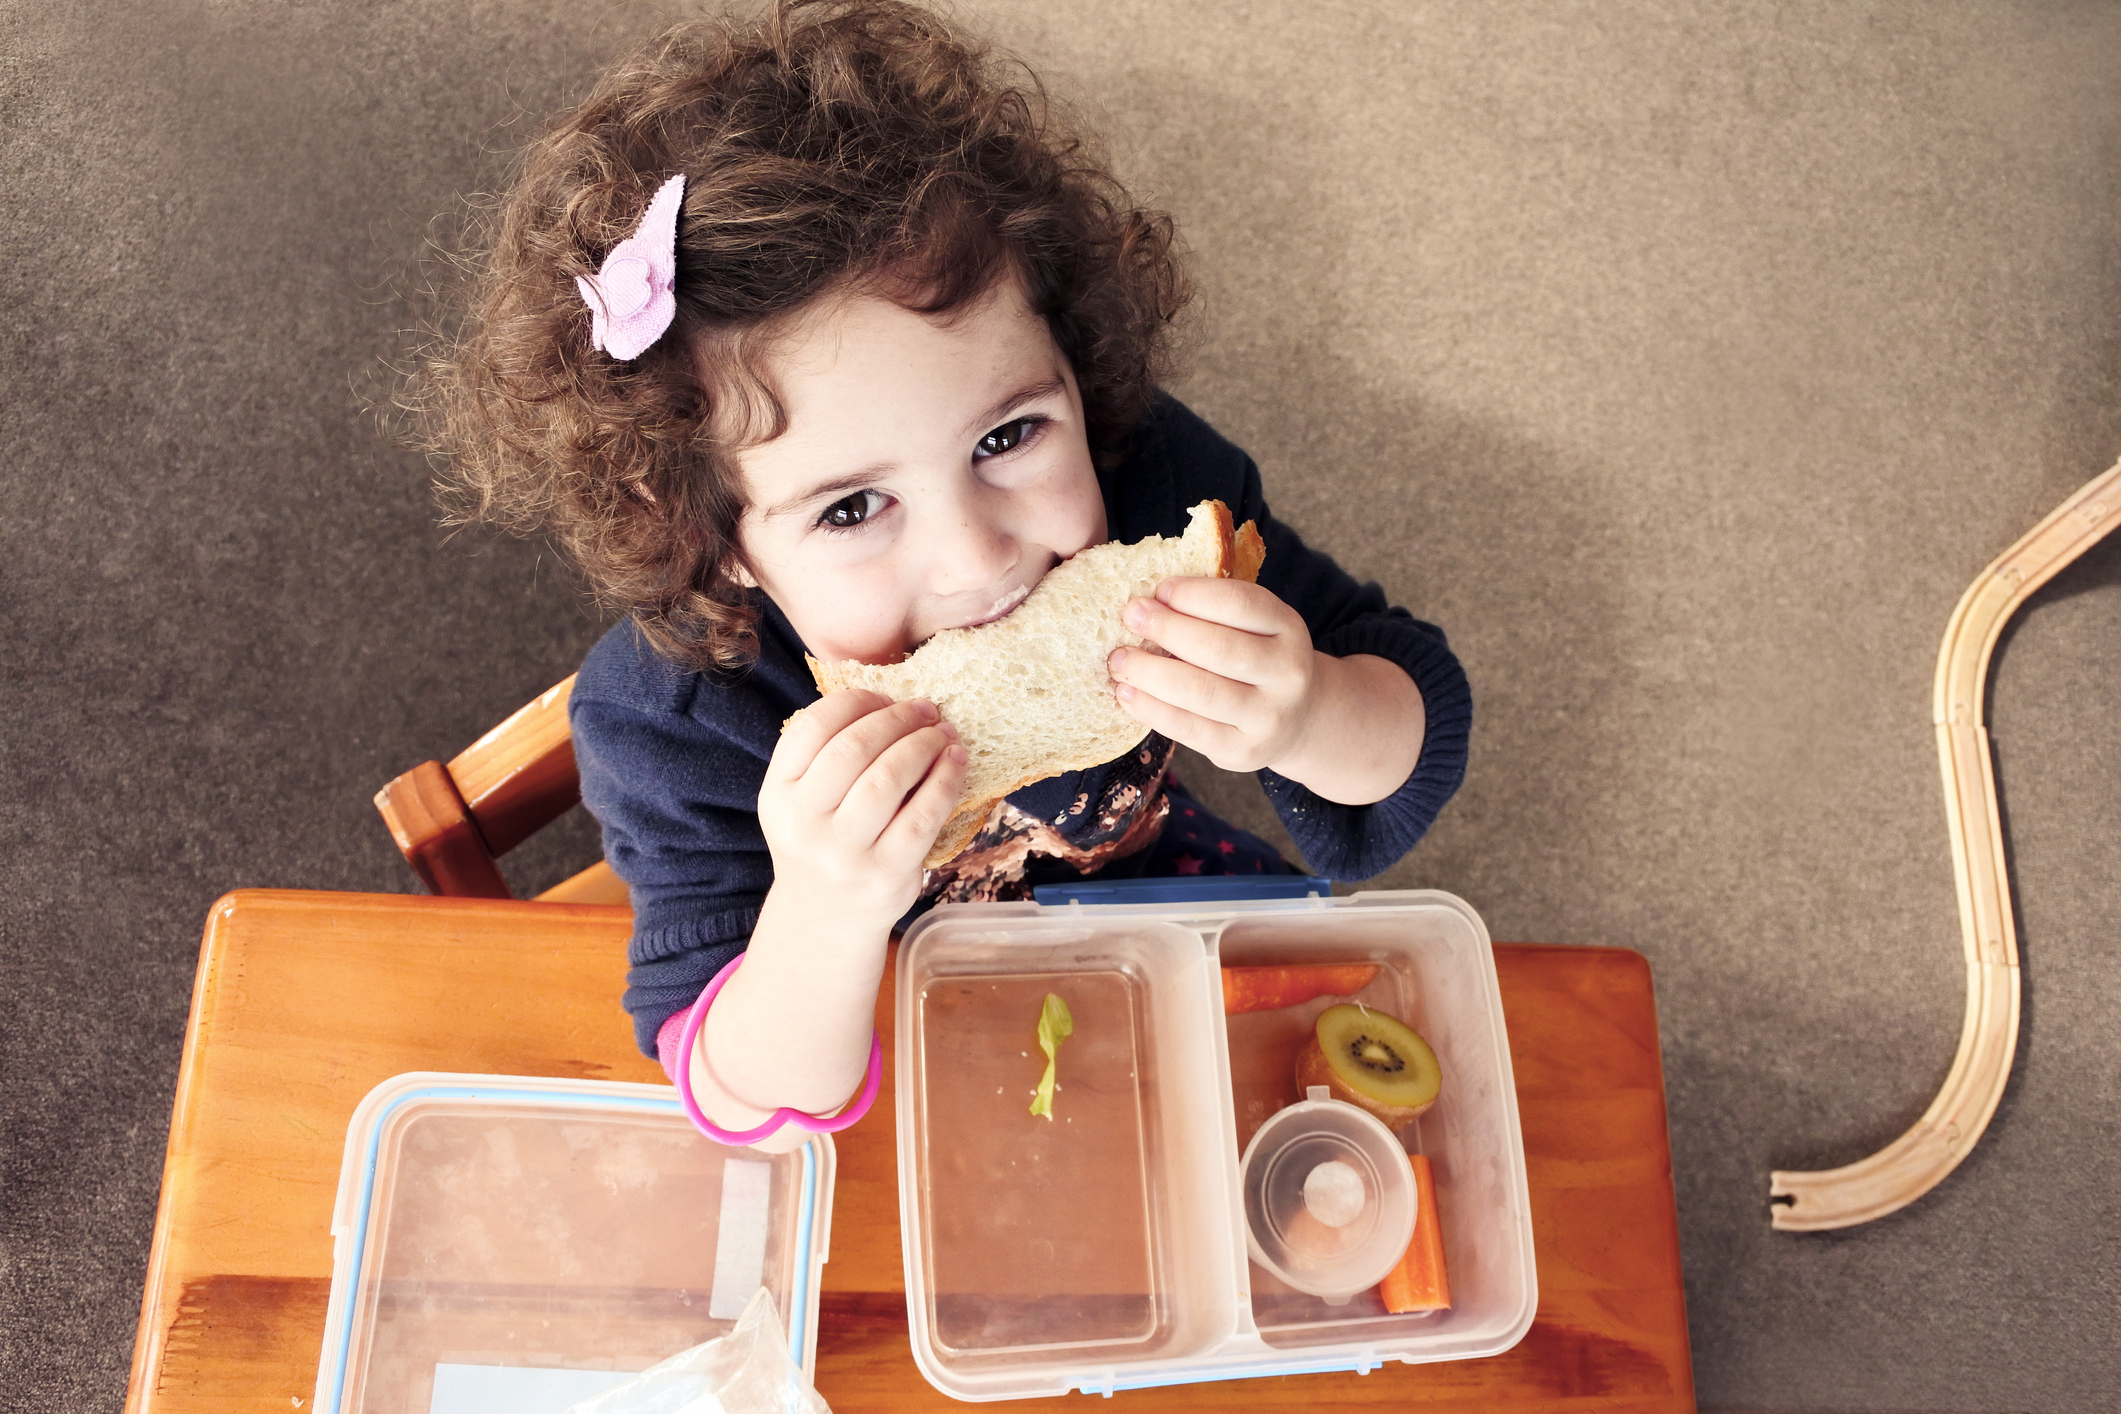 Los buenos hábitos alimenticios se aprenden y la primera infancia es un gran momento para enseñar a los más chicos a comer saludable (Getty)